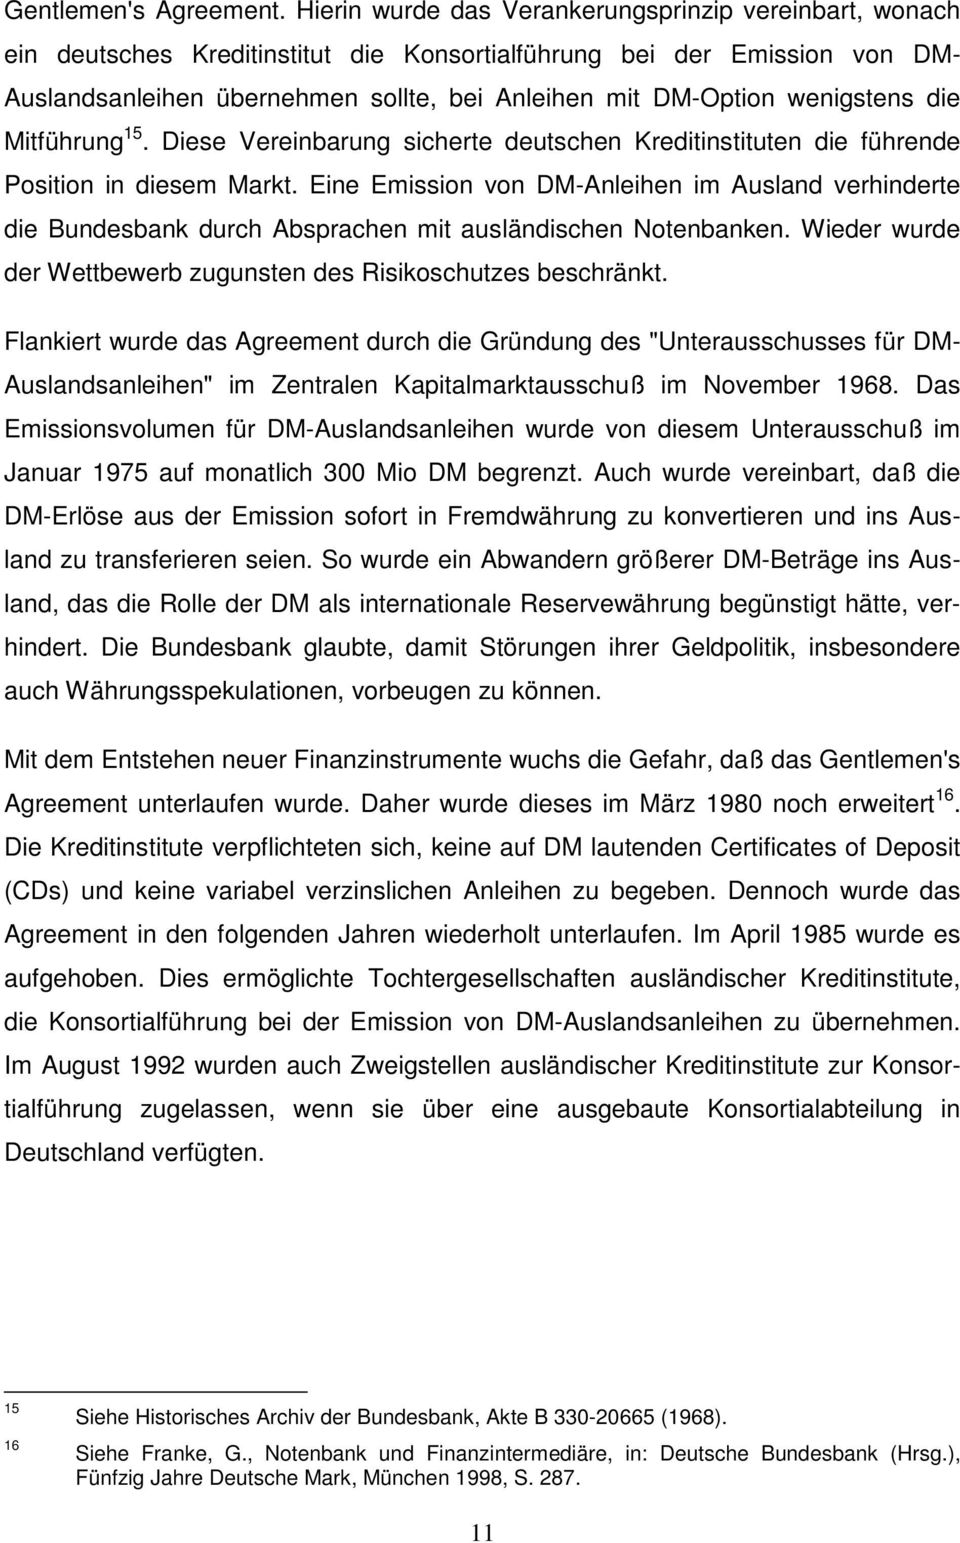 wenigstens die Mitführung 15. Diese Vereinbarung sicherte deutschen Kreditinstituten die führende Position in diesem Markt.